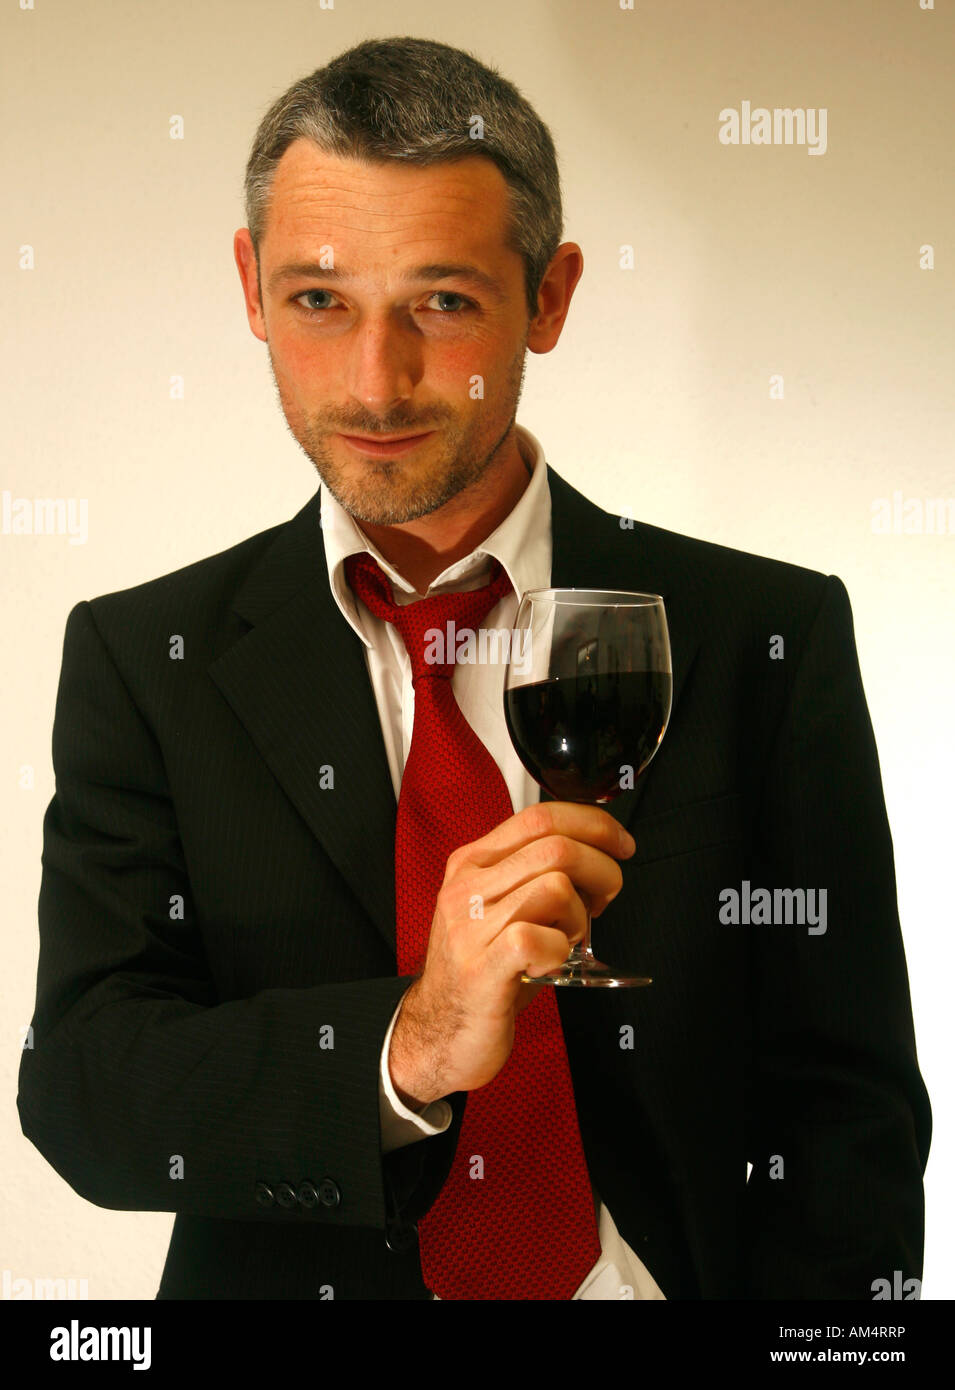 Uomo in un vestito e un tirante tiene un bicchiere di vino rosso Foto Stock